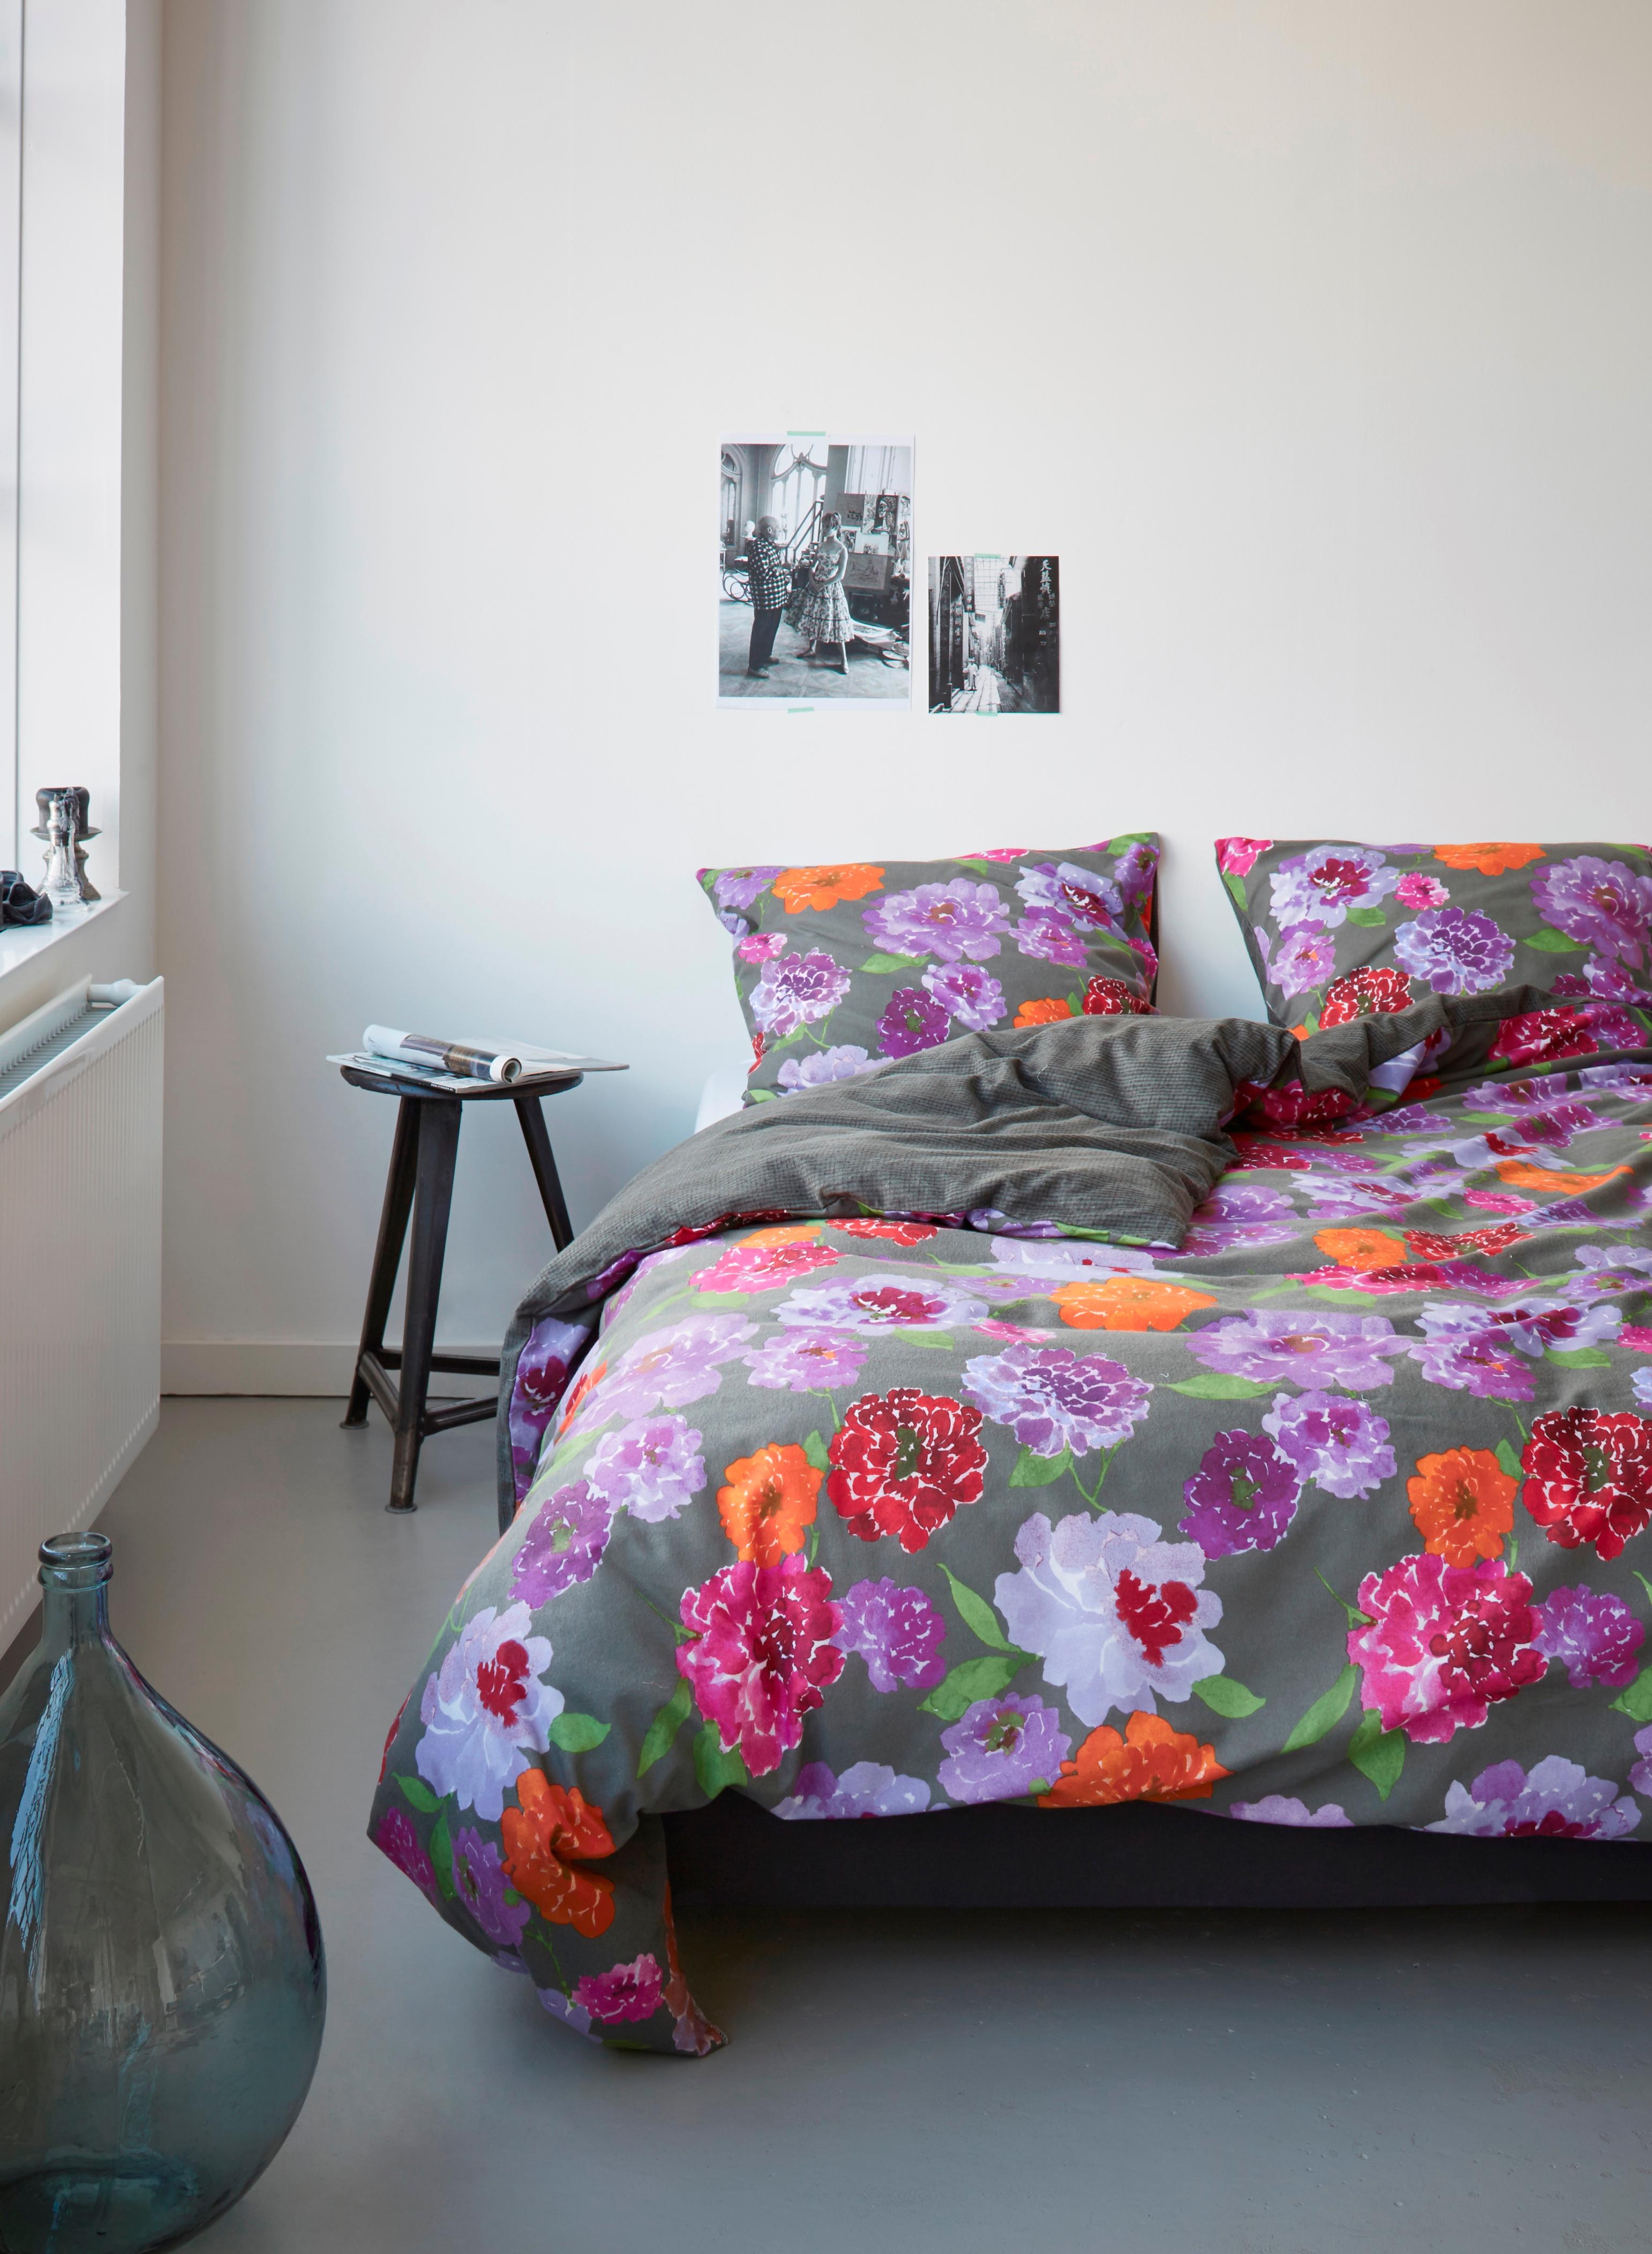 Blumenmuster im Schlafzimmer #bett #bettwäsche #zimmergestaltung ©Essenza Home/Vanezza